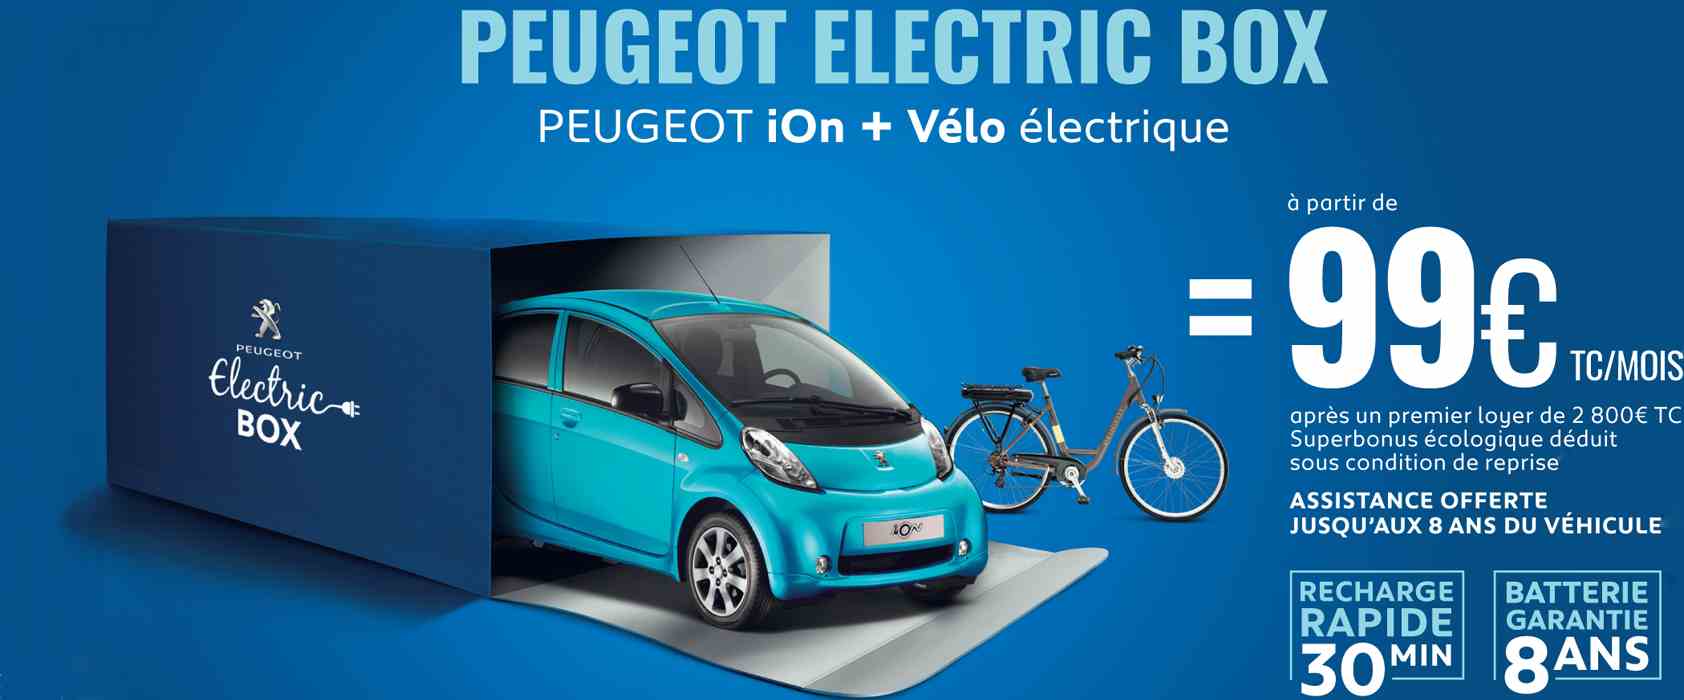 Peugeot Electric Box